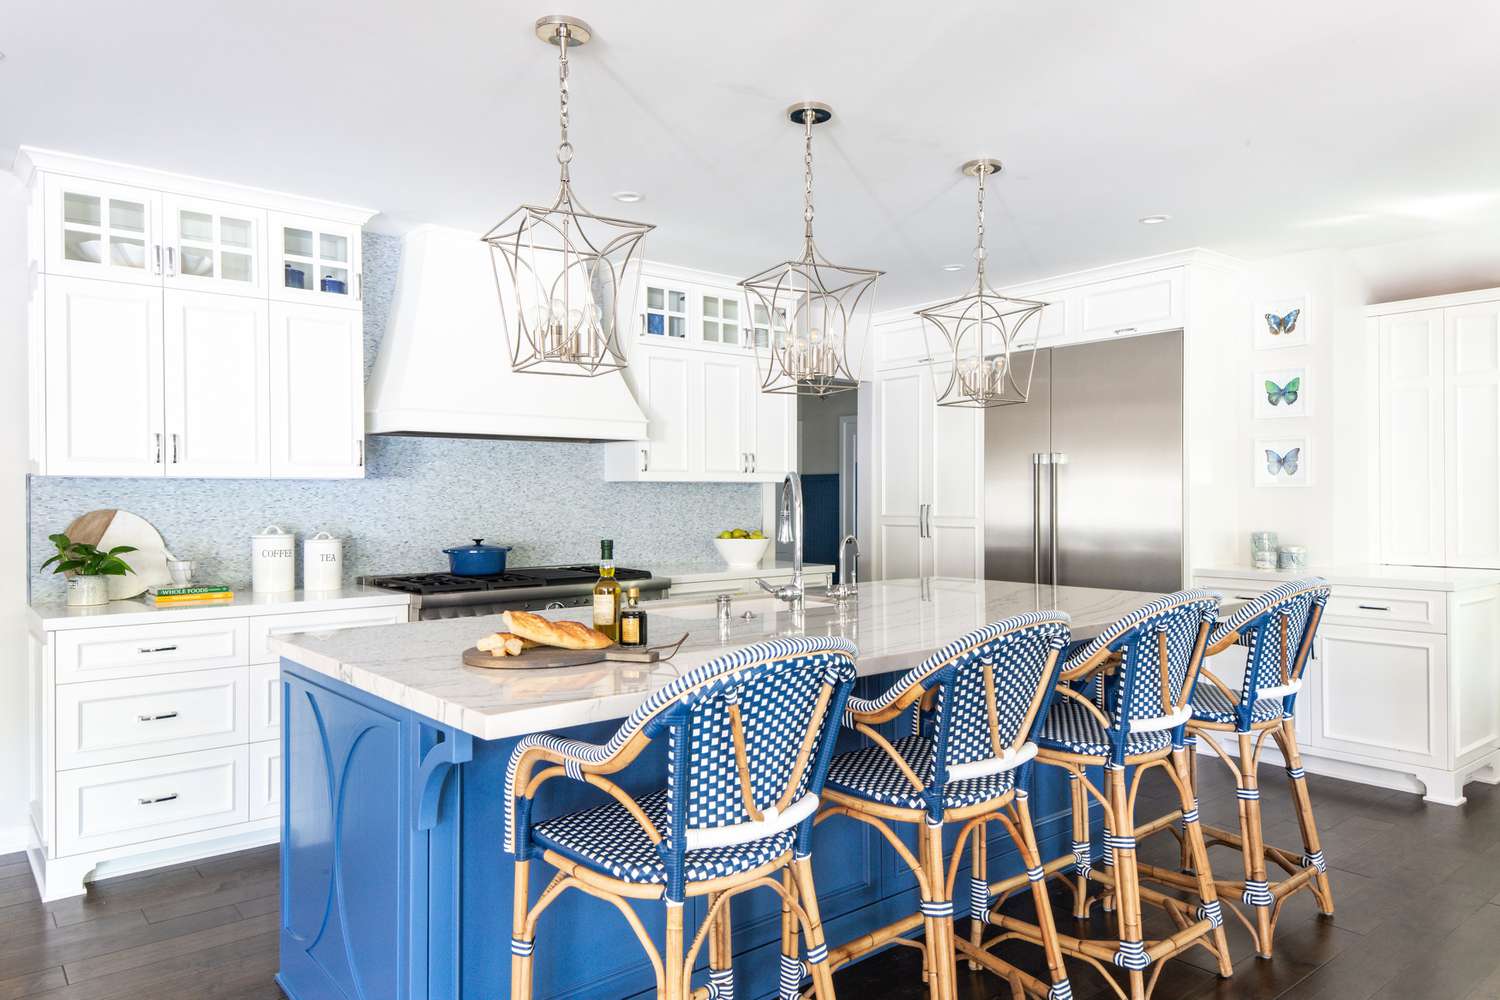 Vibrant blue and white kitchen